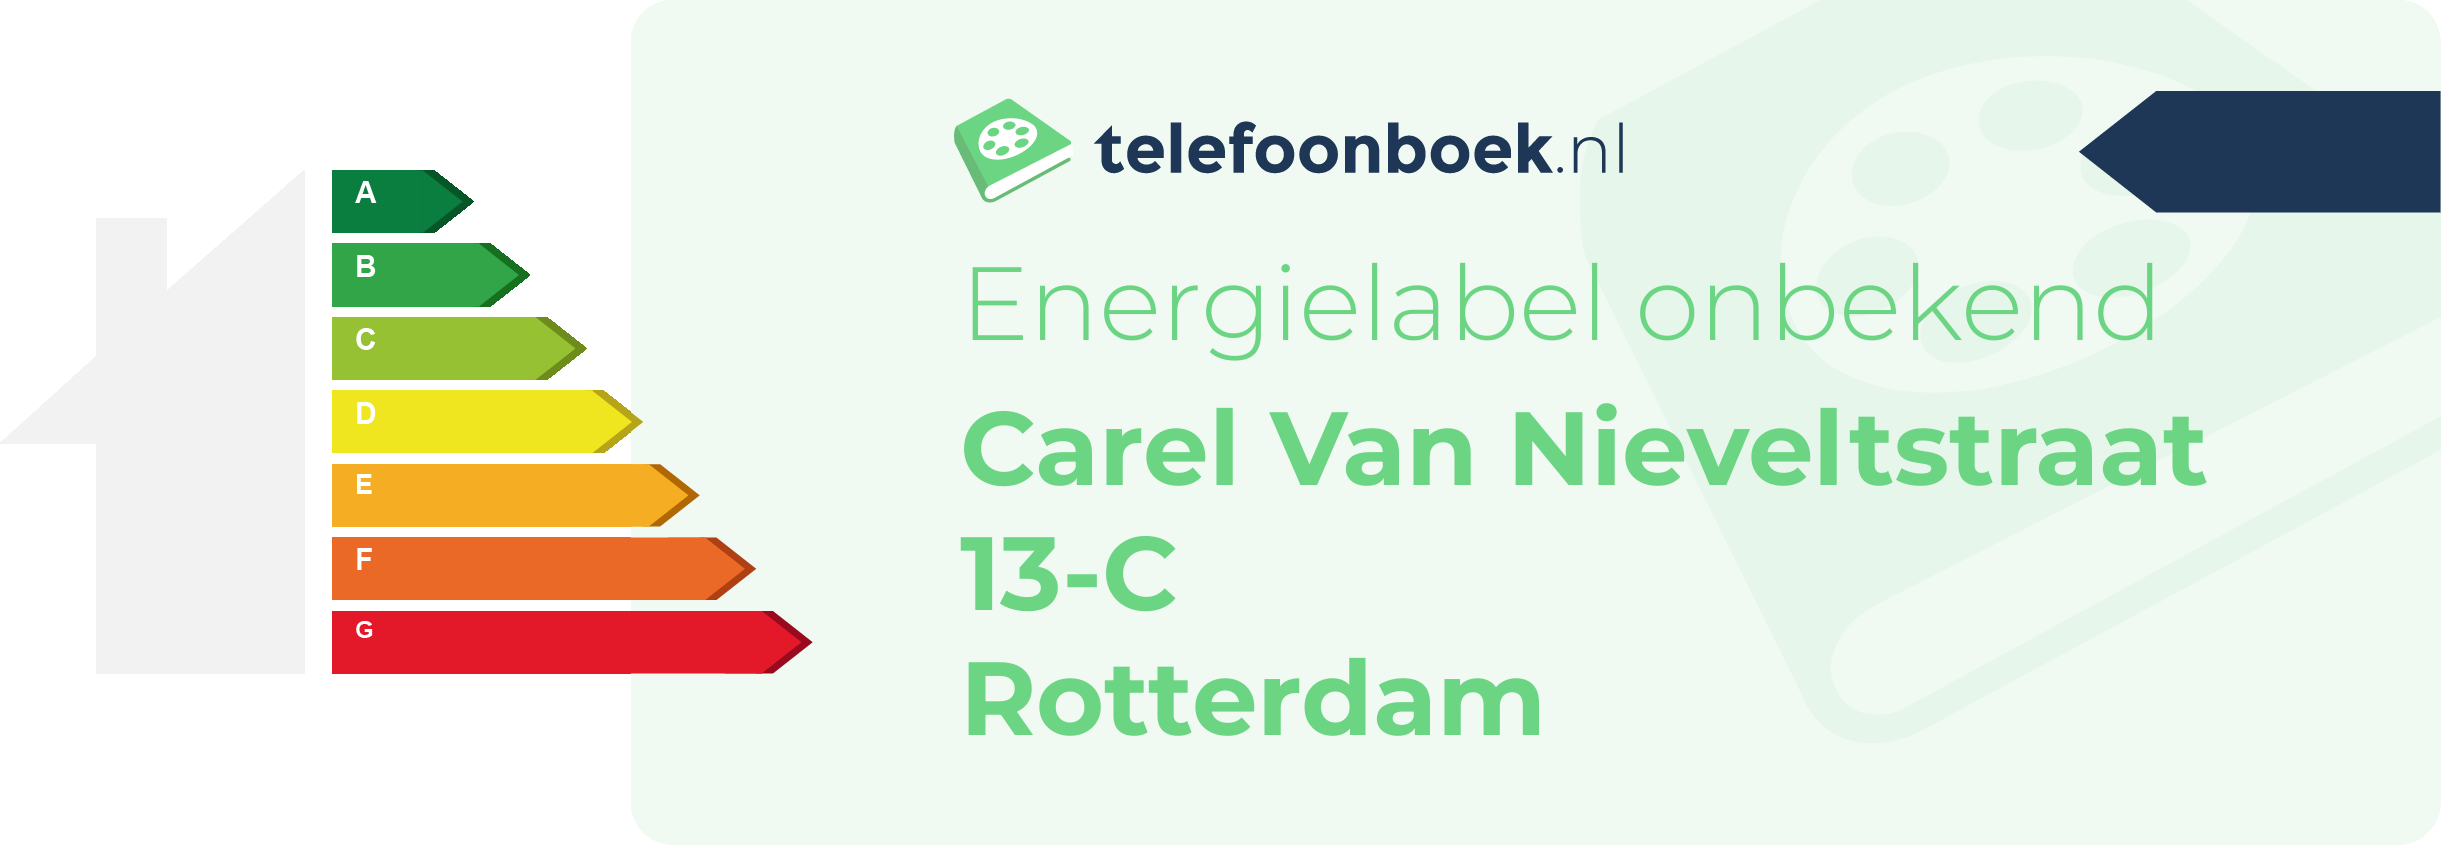 Energielabel Carel Van Nieveltstraat 13-C Rotterdam